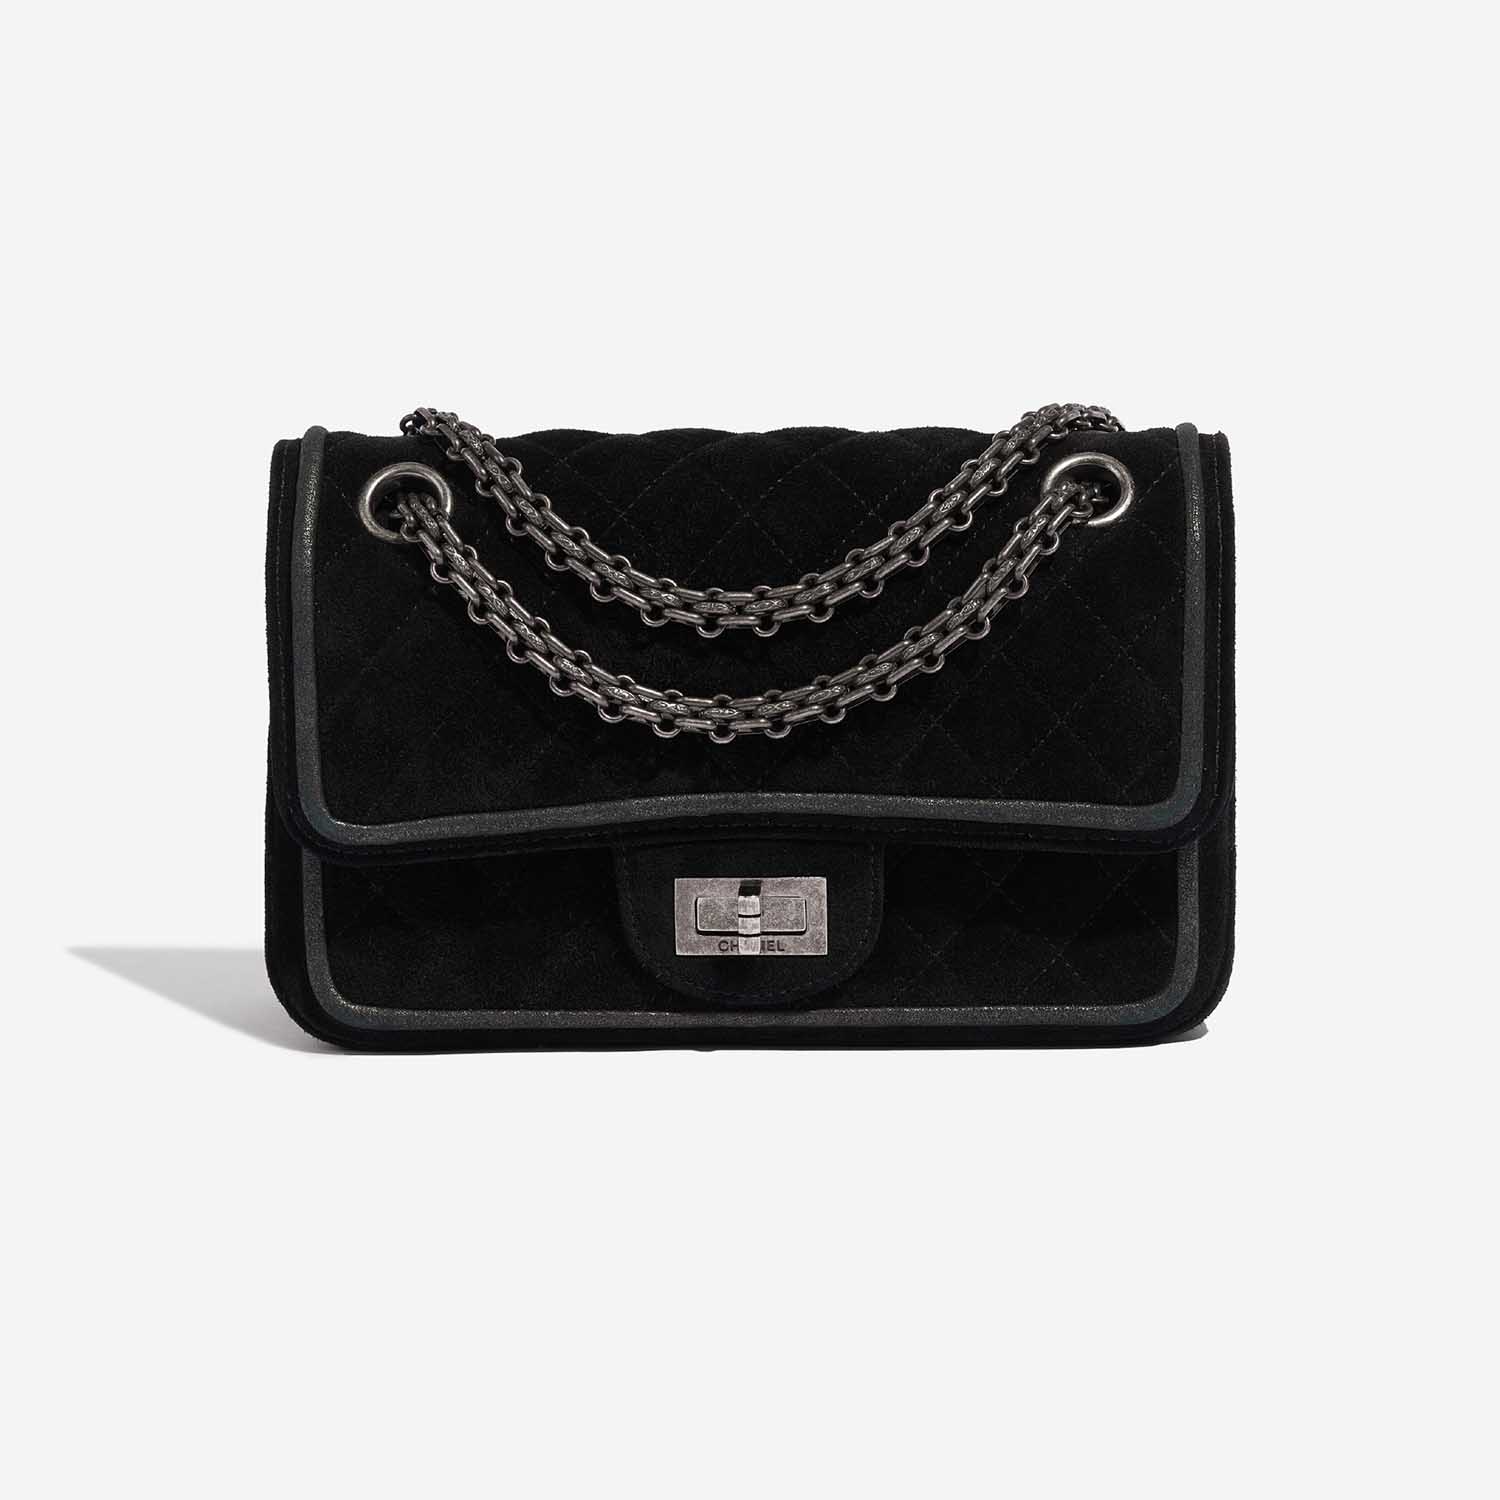 Sac Chanel 2.55 Reissue Velvet Black Black Front | Vendez votre sac de créateur sur Saclab.com